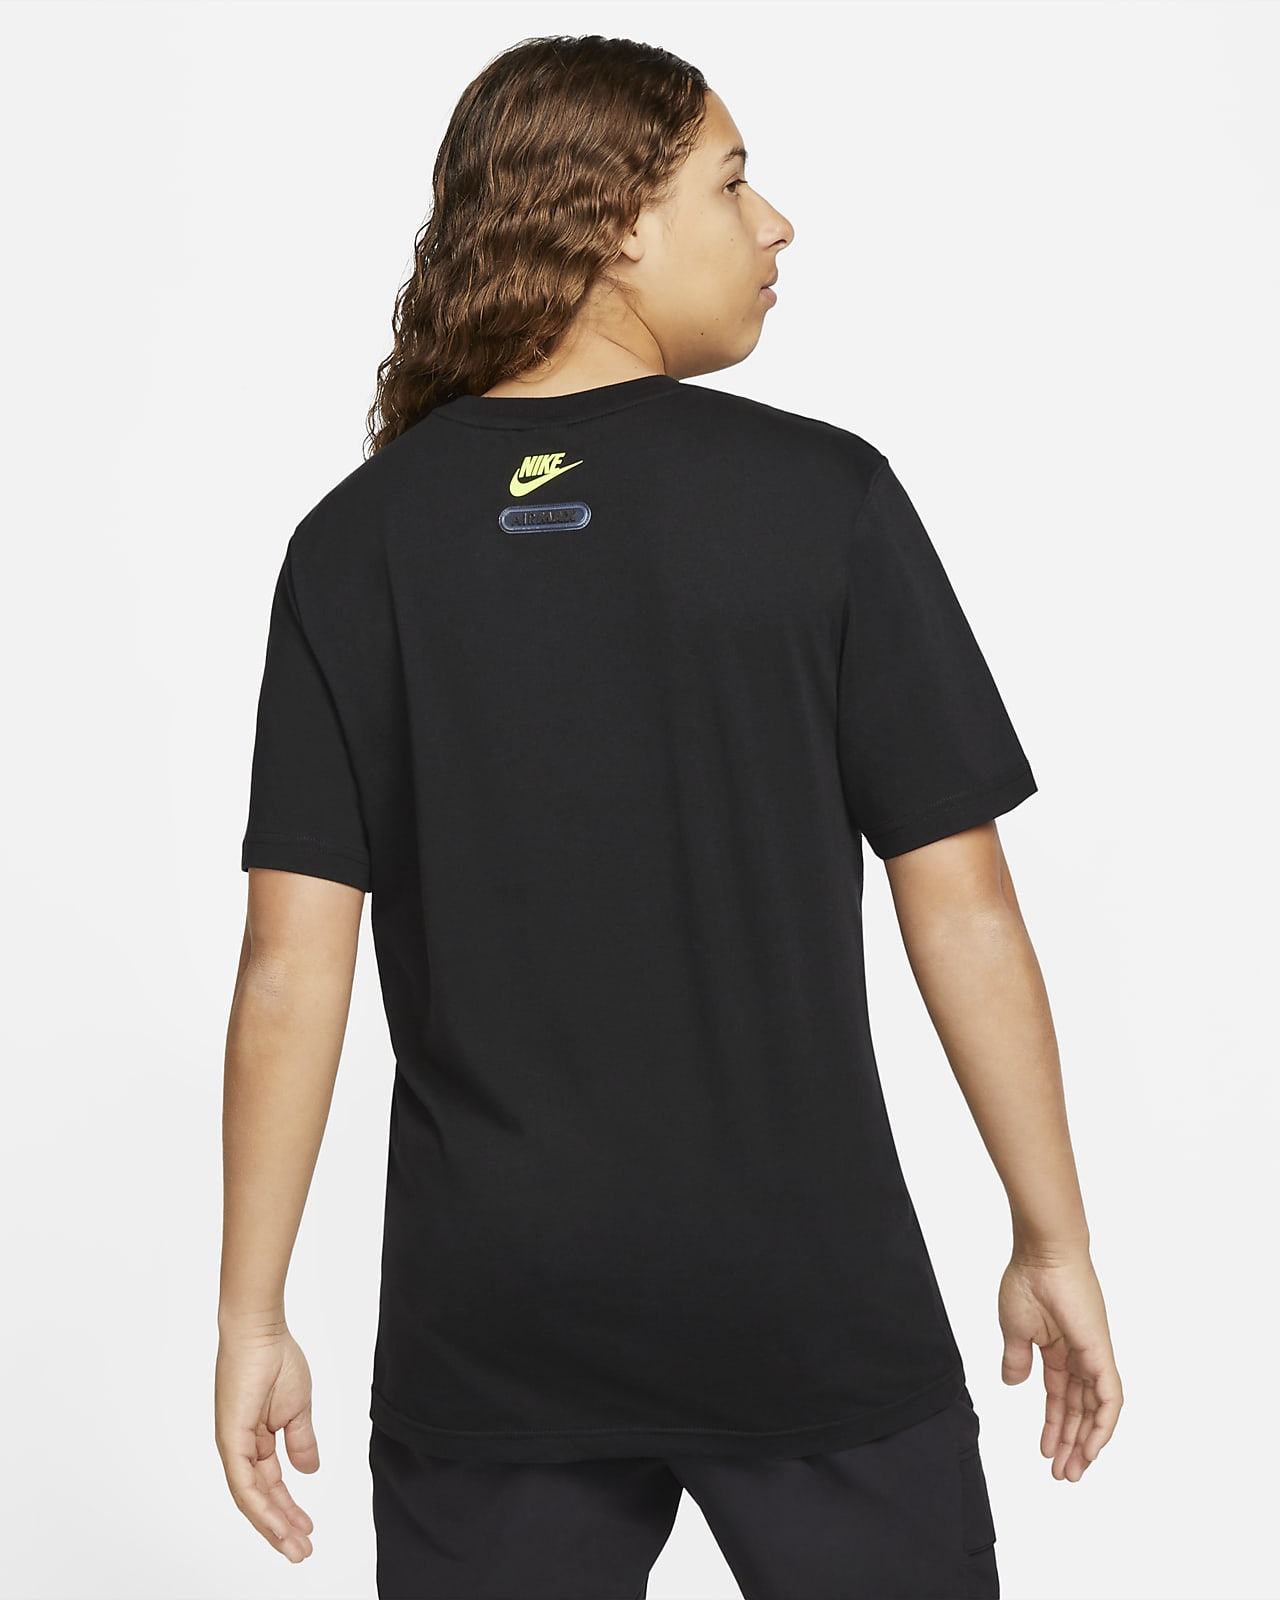 Nike Sportswear Air Max Men's T-Shirt. Nike SA